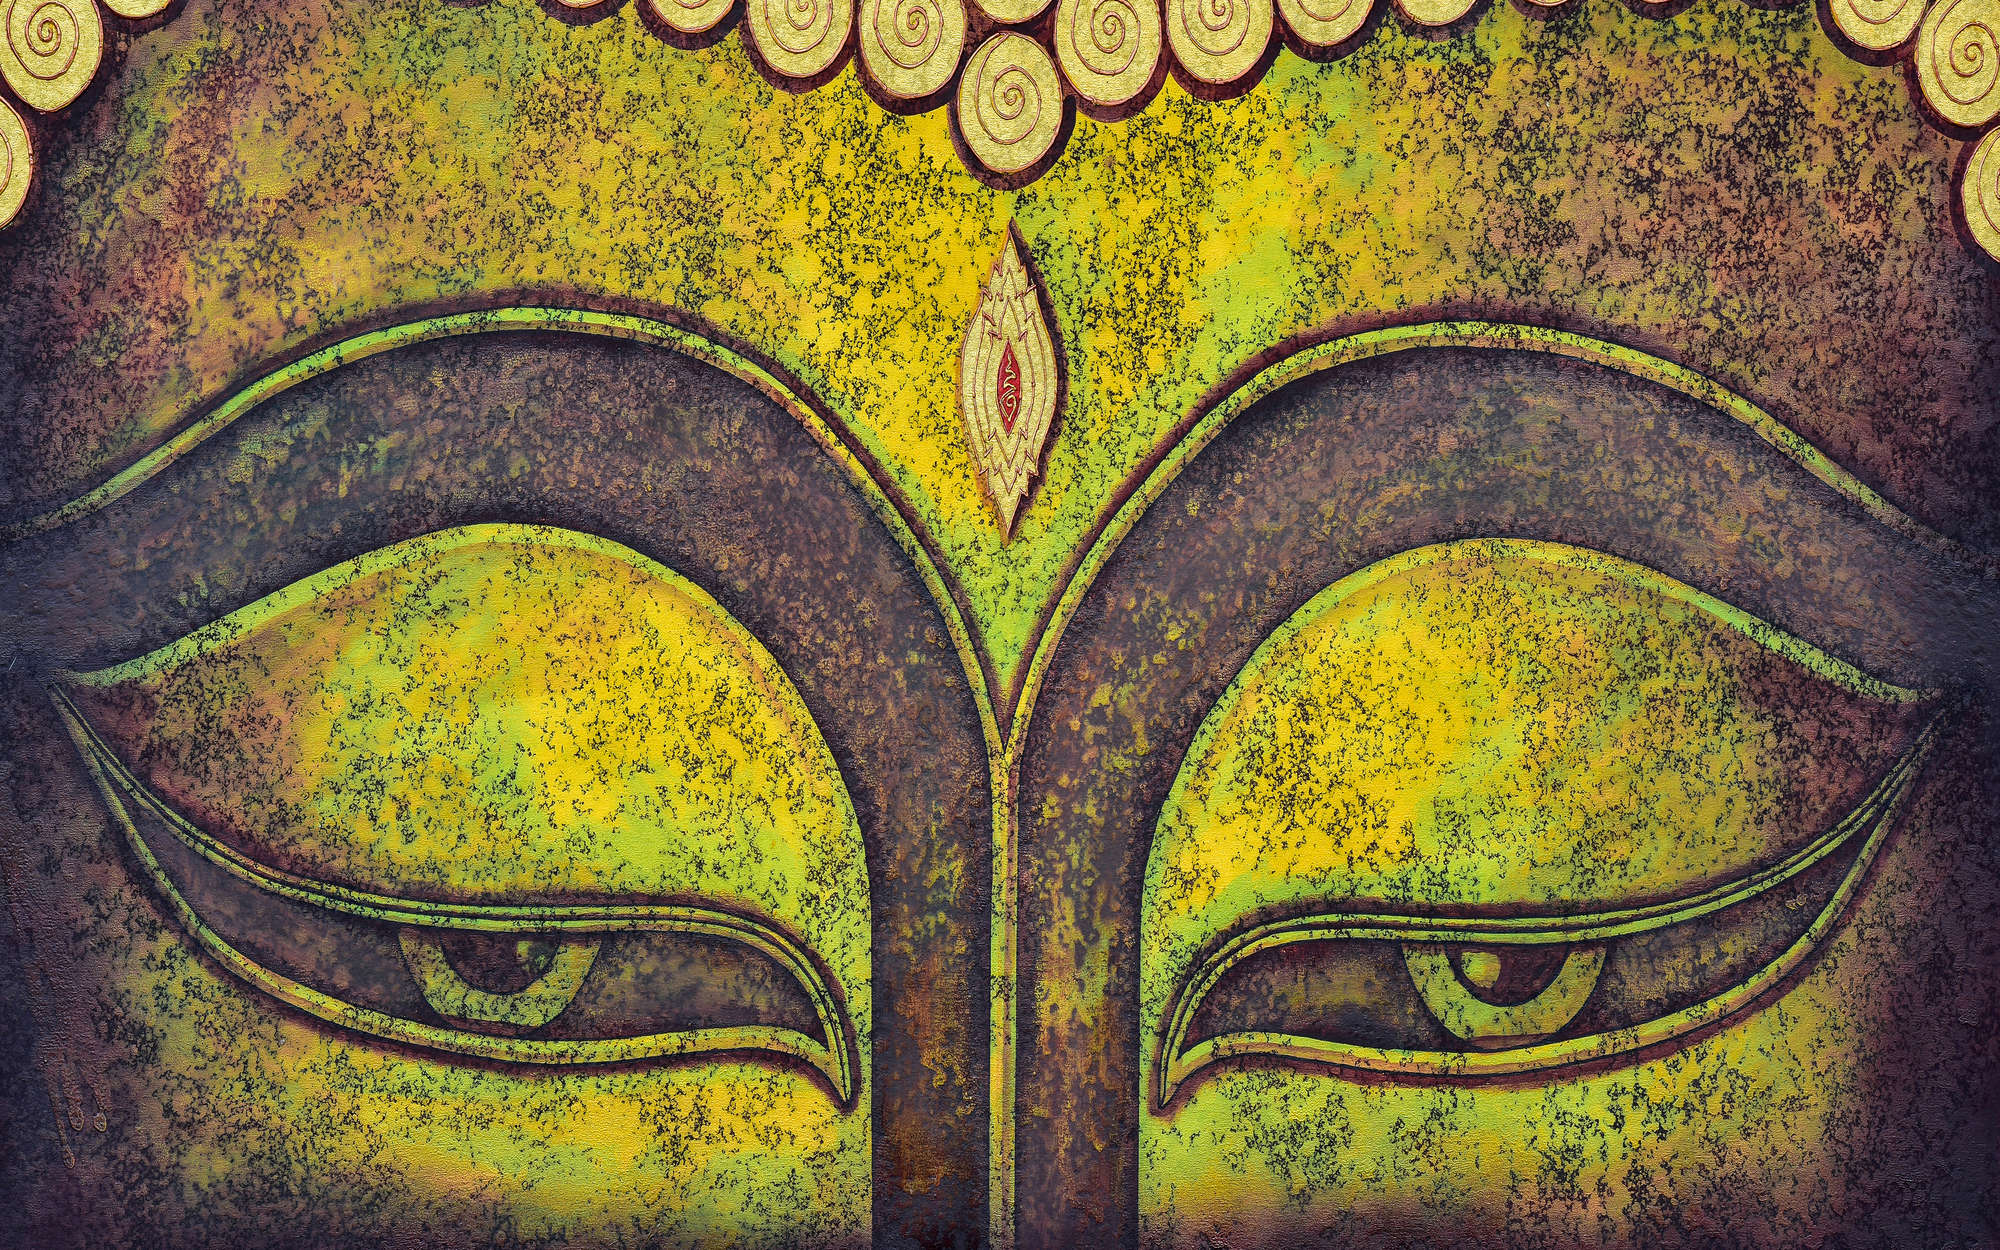             papiers peints à impression numérique détail du visage de Bouddha - intissé structuré
        